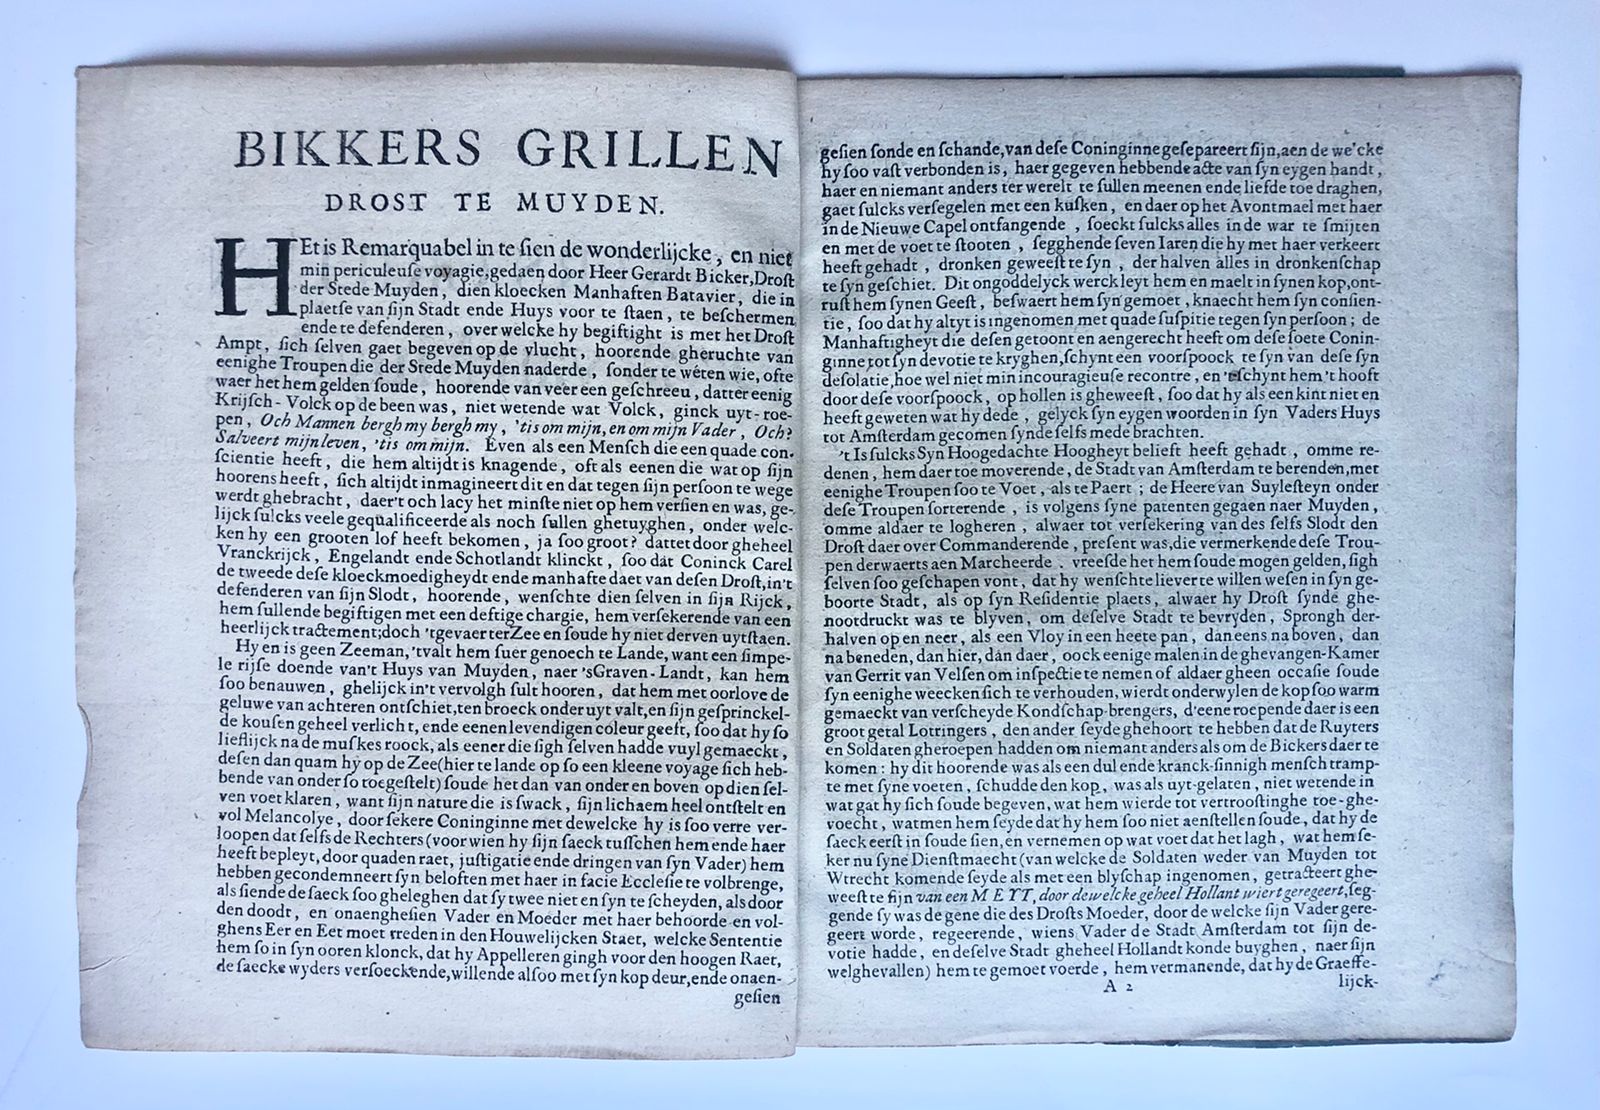 [Rare antique pamphlet, Noord-Holland, Muiden, 1650] Bikkers Grillen, Drost van Muyden, Den 30 July, Anno 1650, 4 pp.